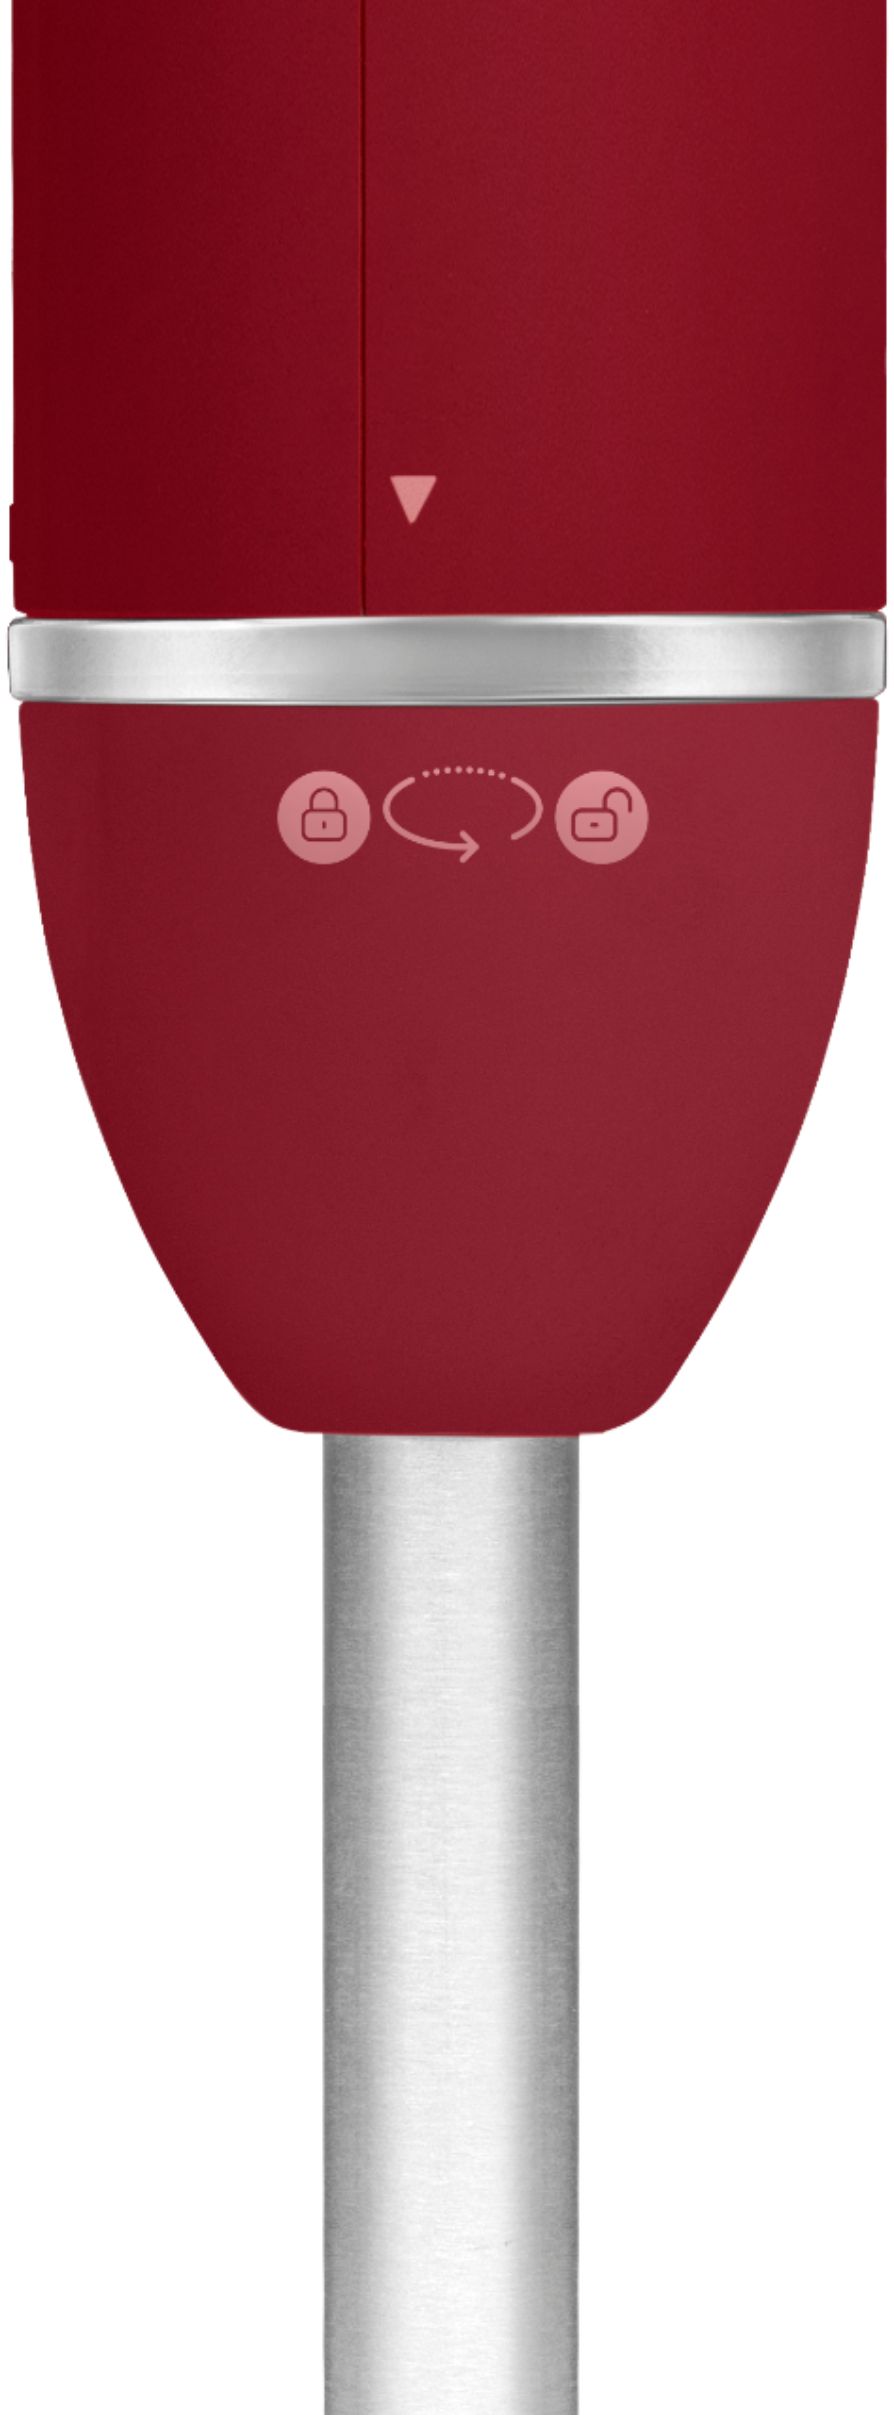 Chefman Immersion Stick 300 Watt Hand Blender - Red, 1 ct - Kroger